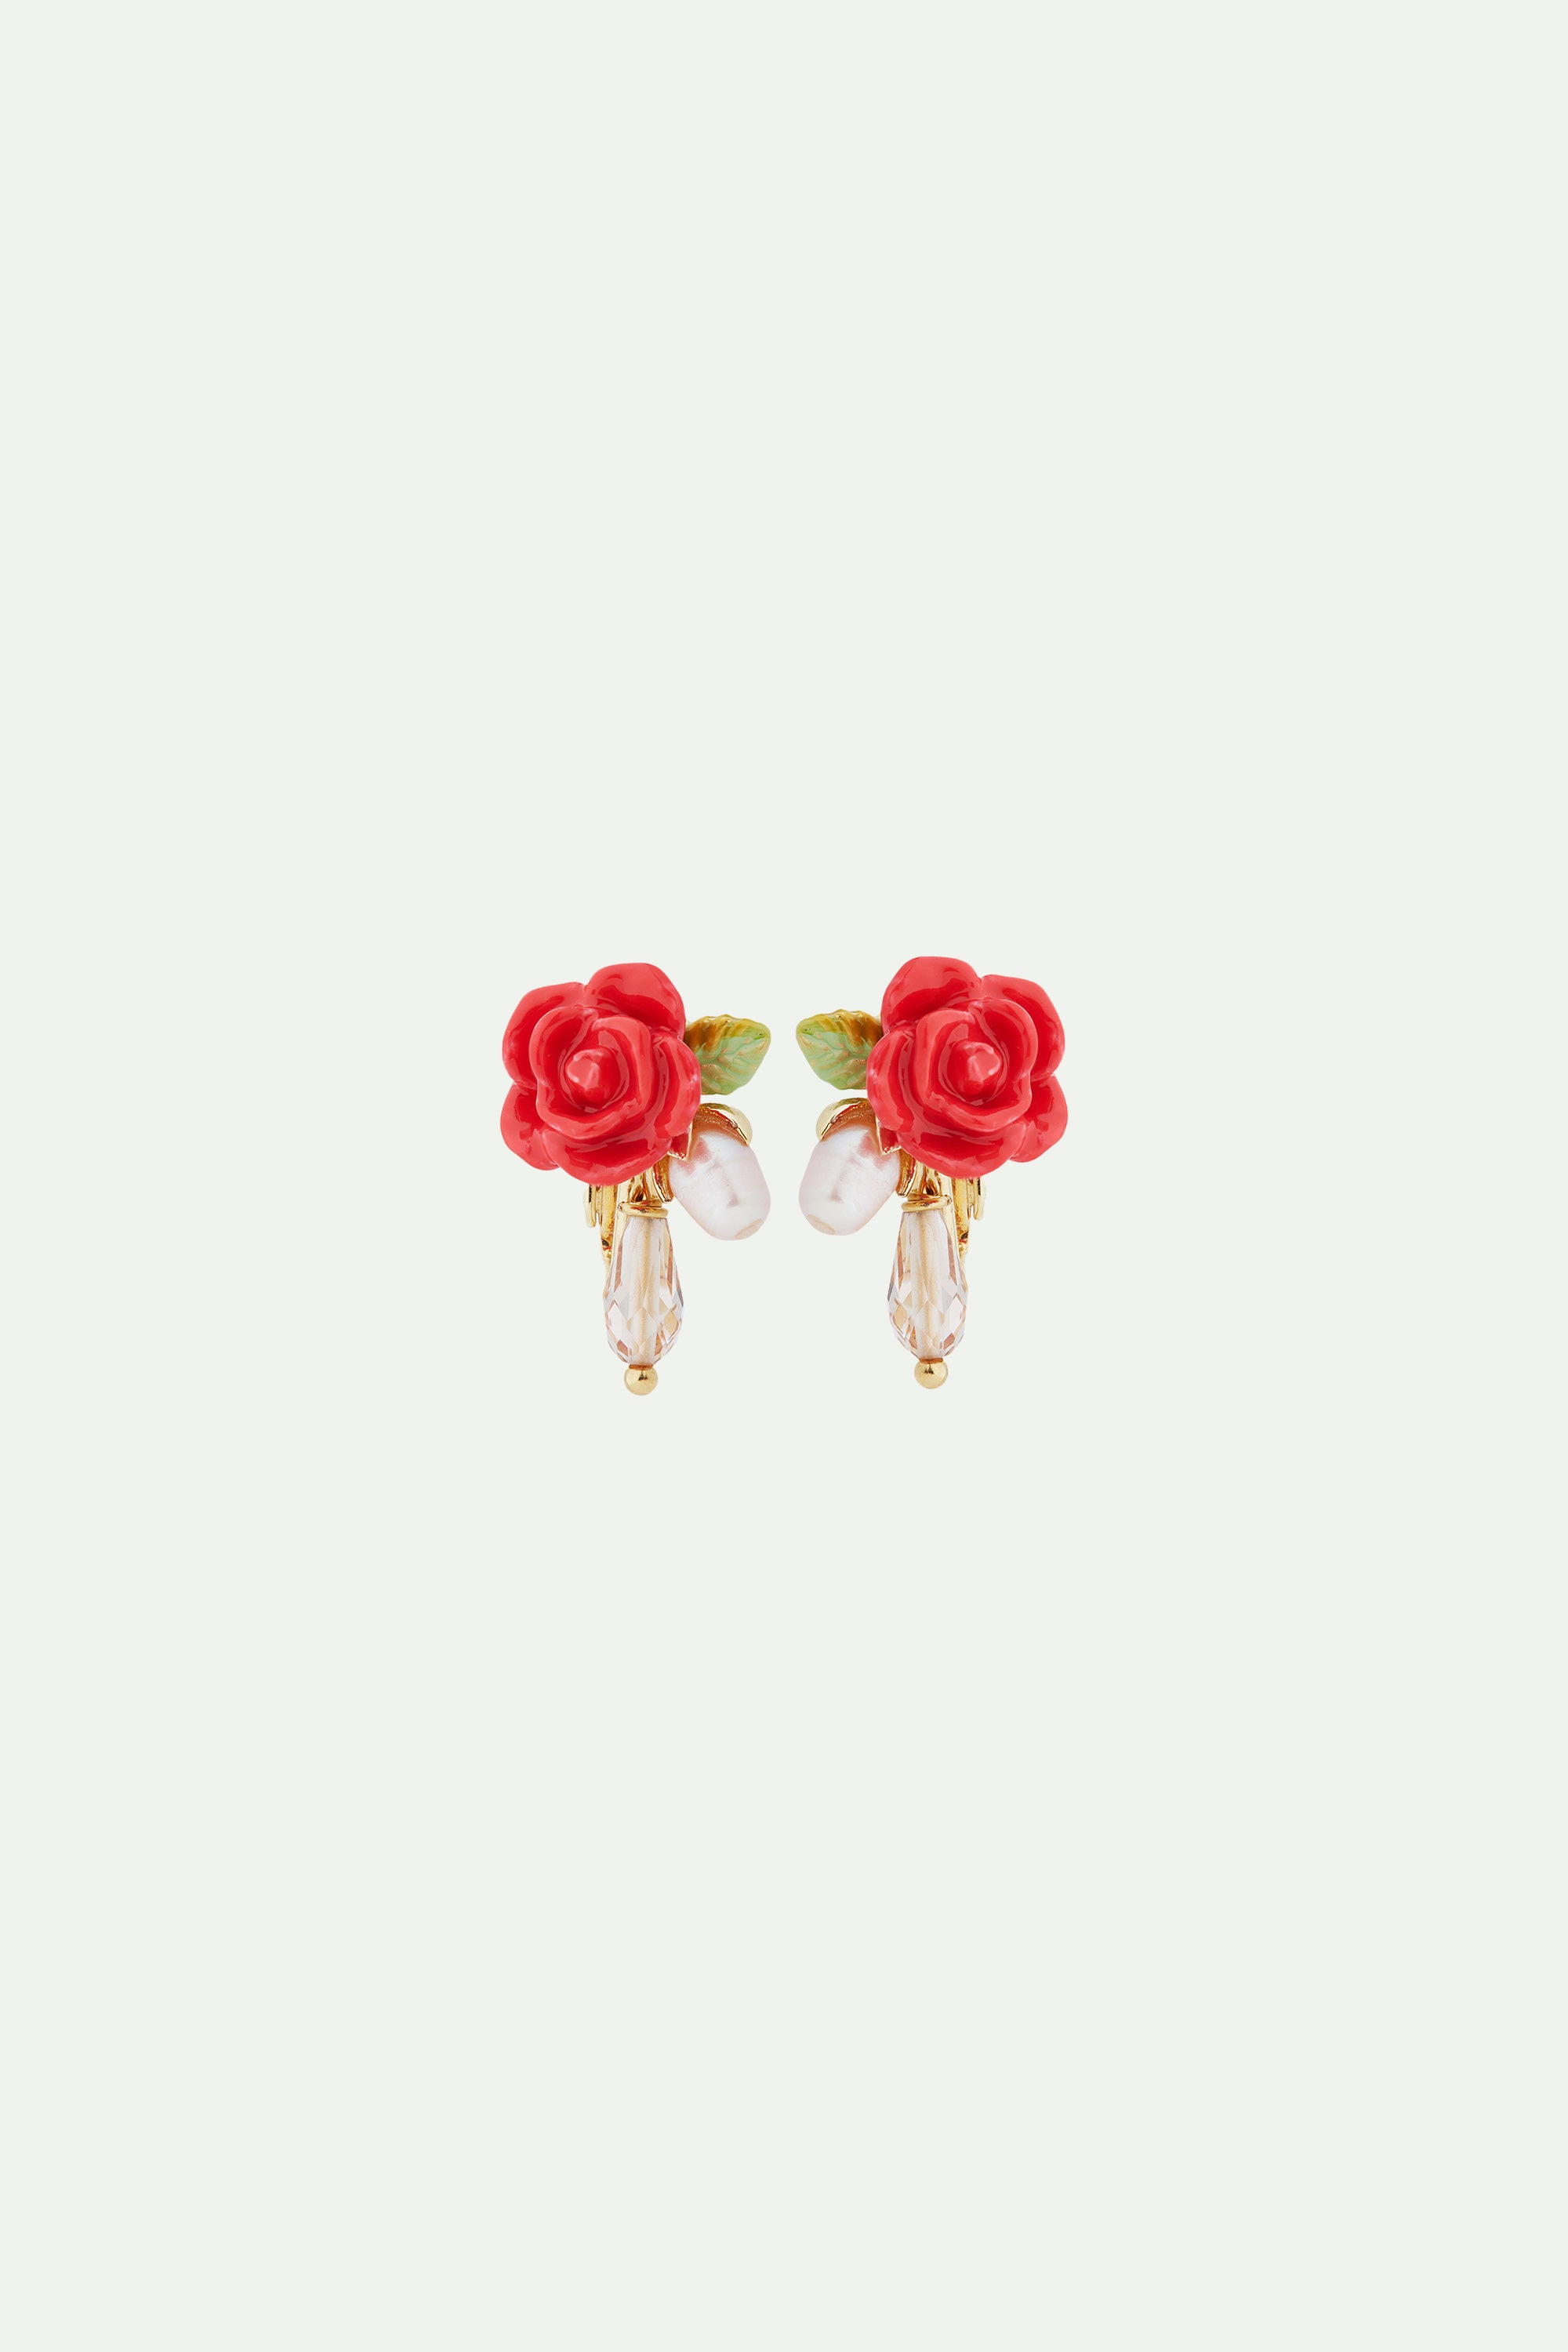 Boucles d'oreilles rose, perle de culture et goutte de verre